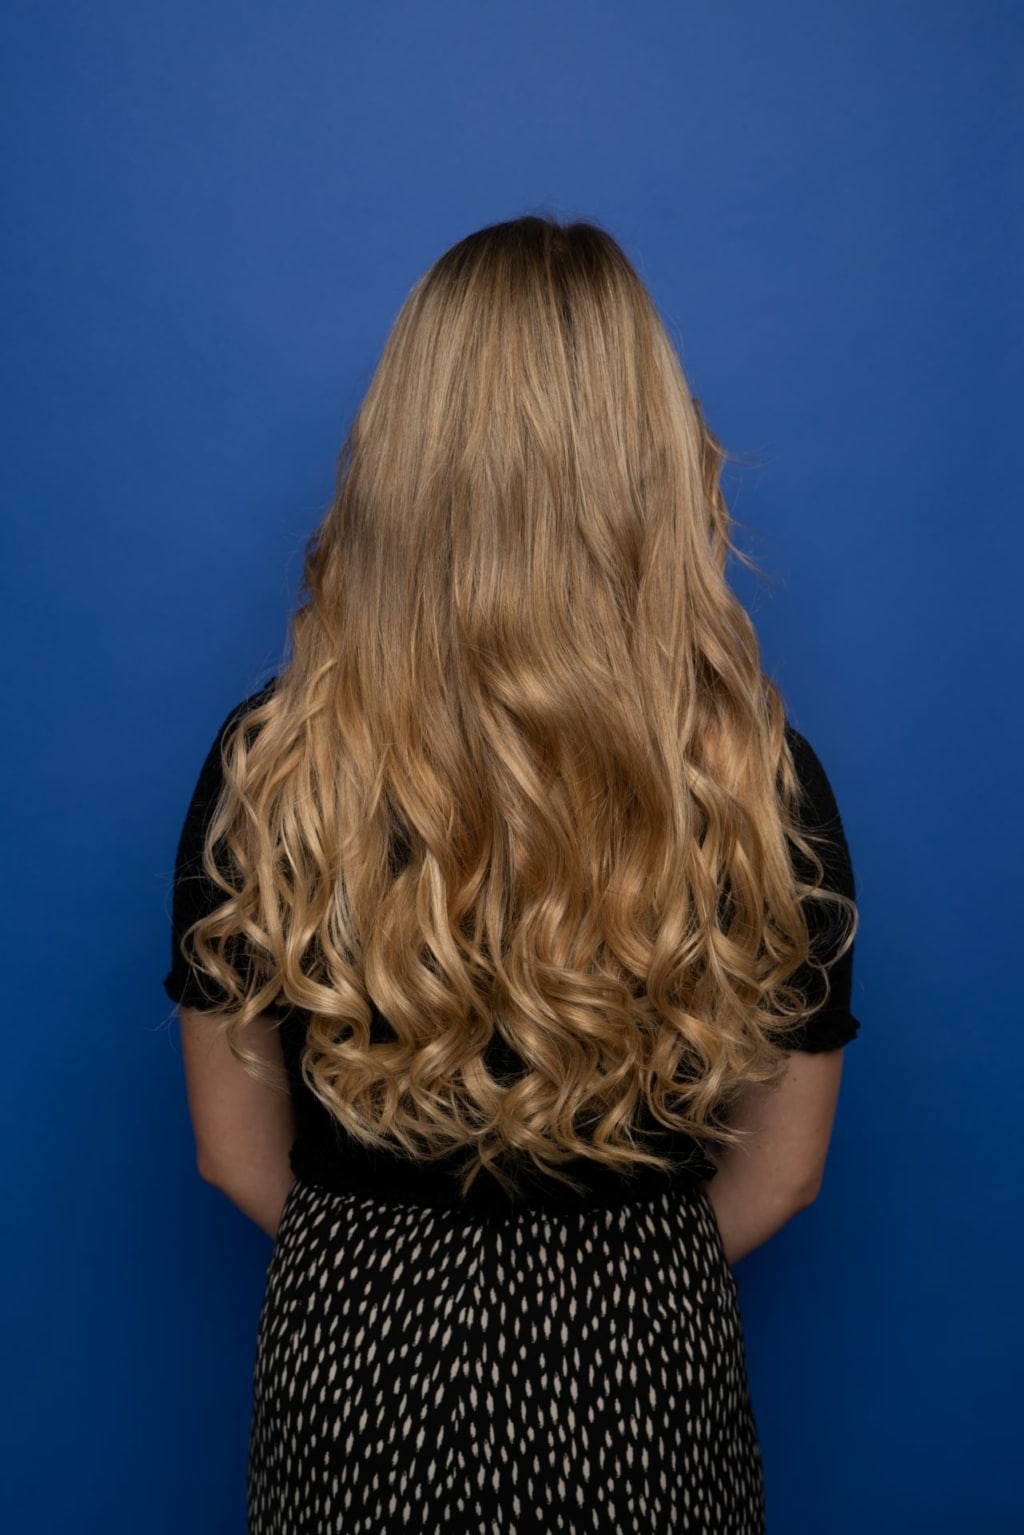 La gagnante d'une extension de cheveux Hairdreams montre sa crinière blonde.